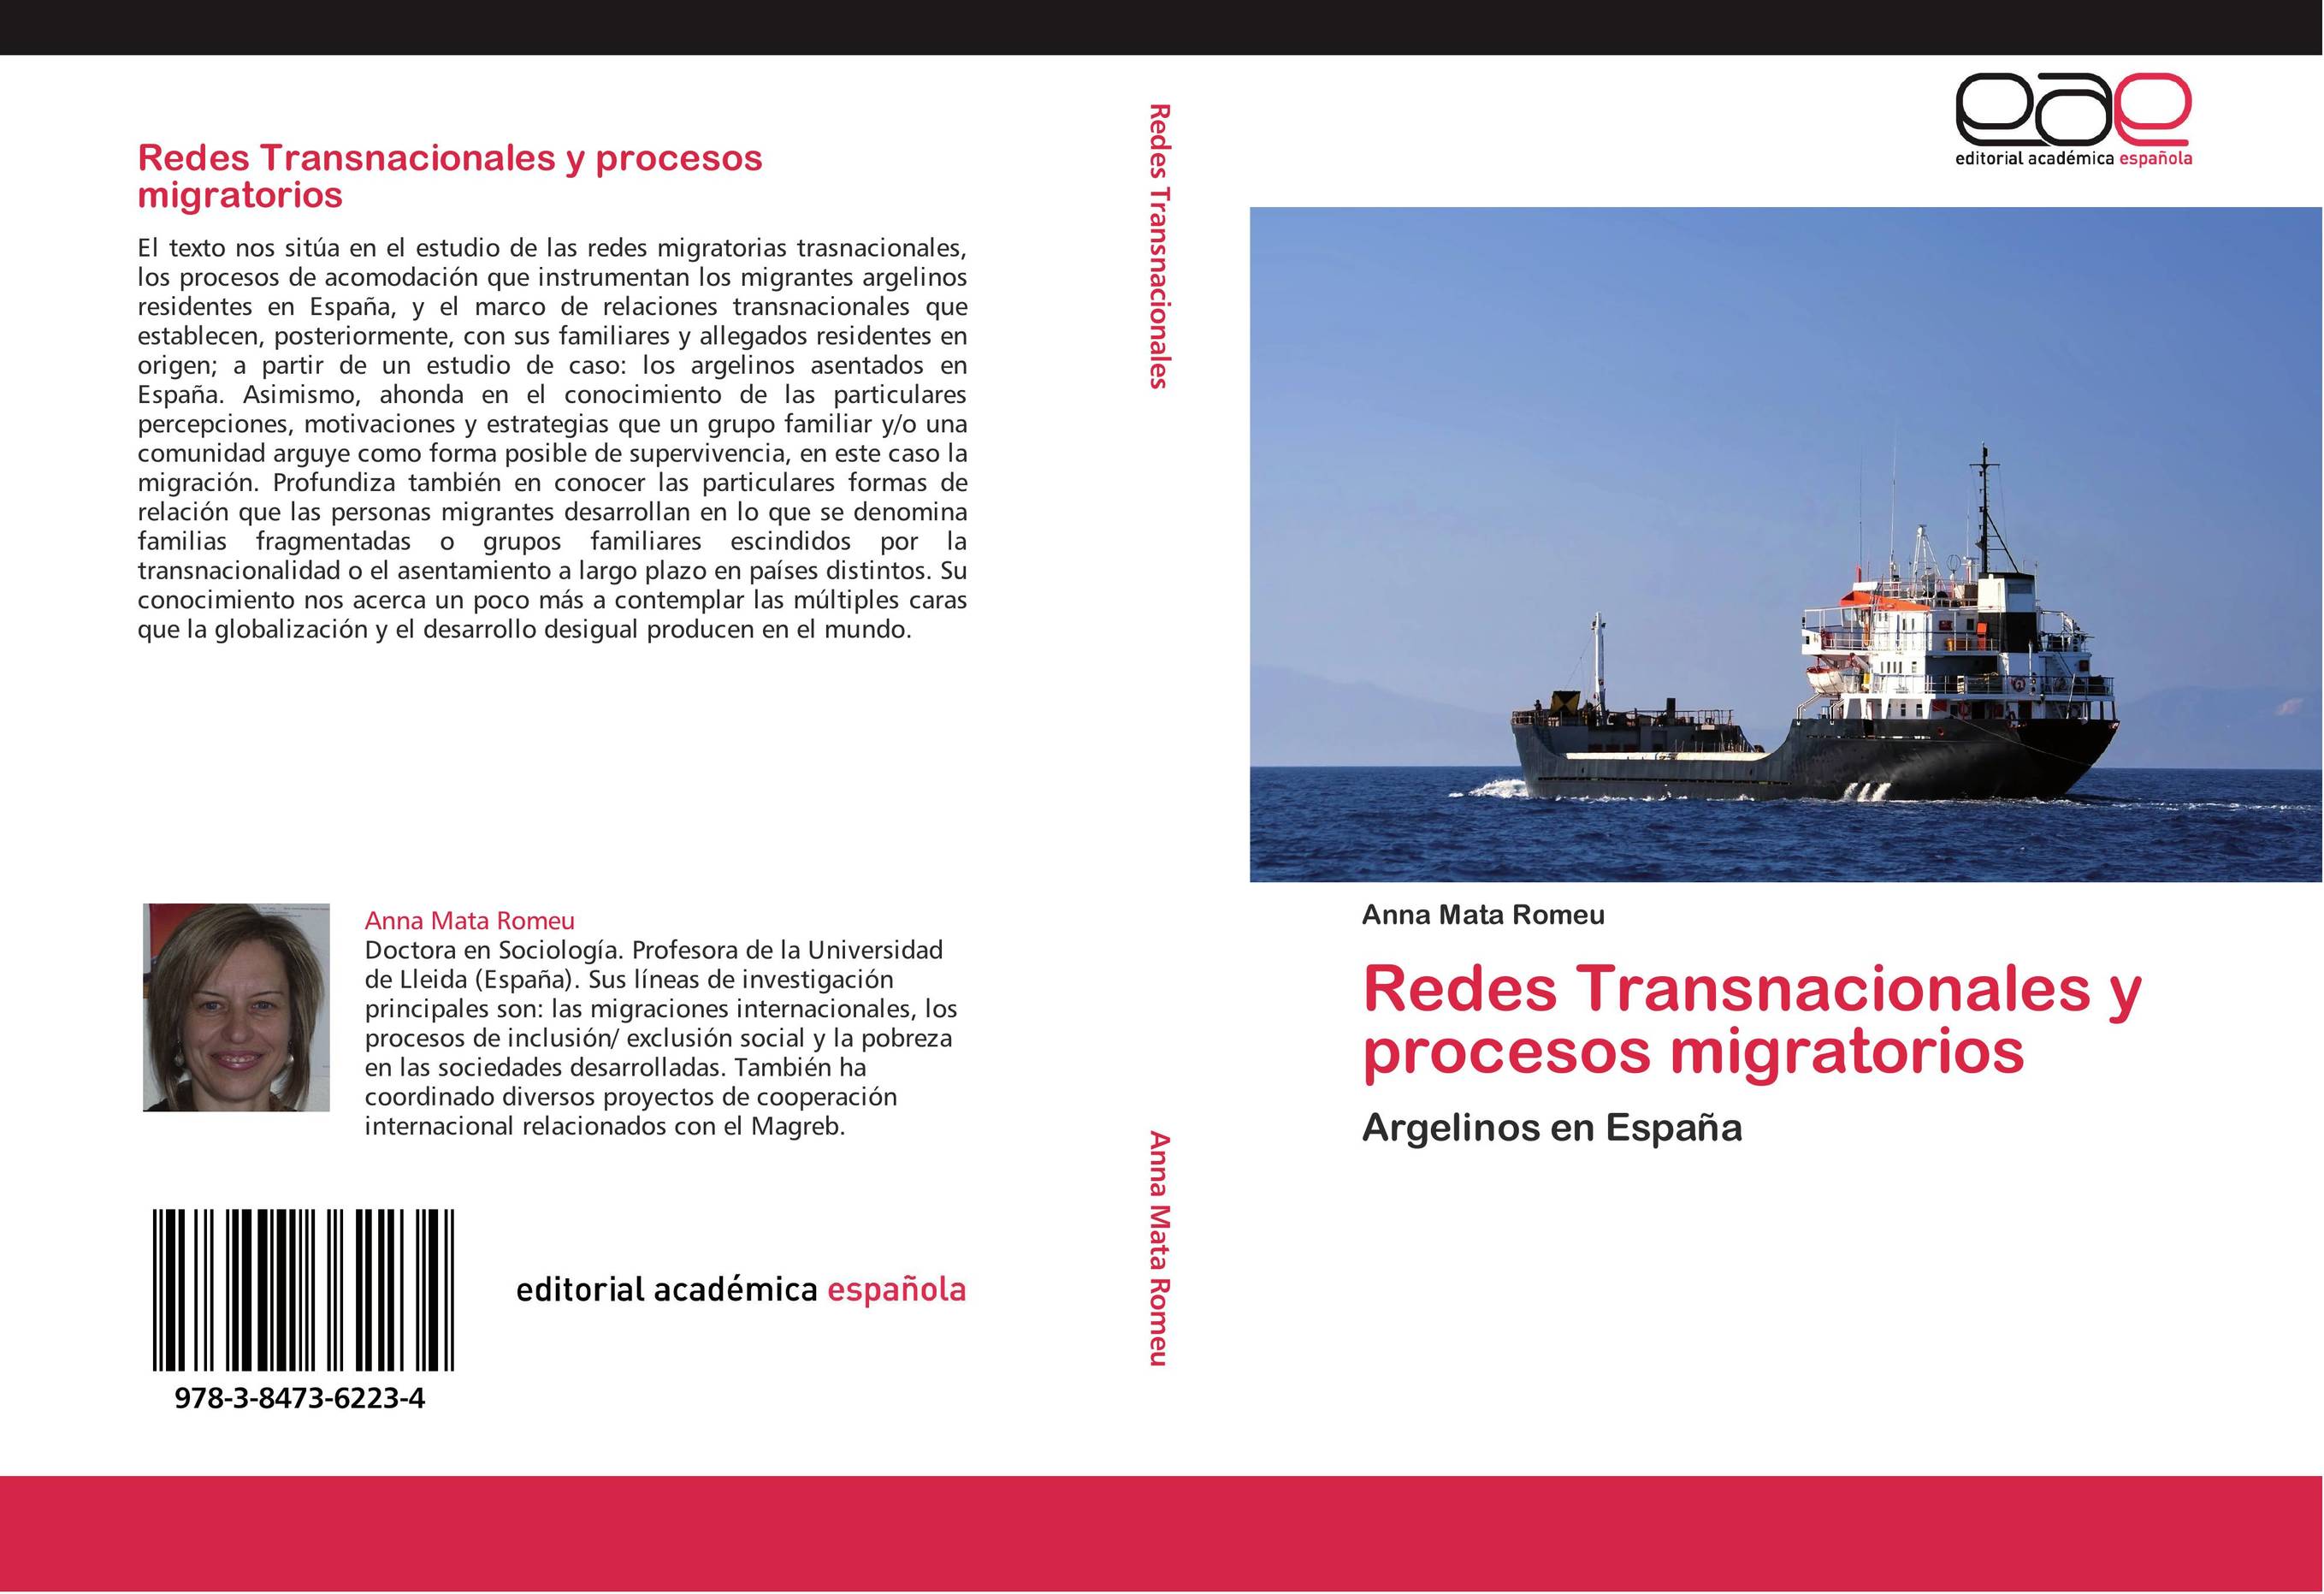 Redes Transnacionales y procesos migratorios